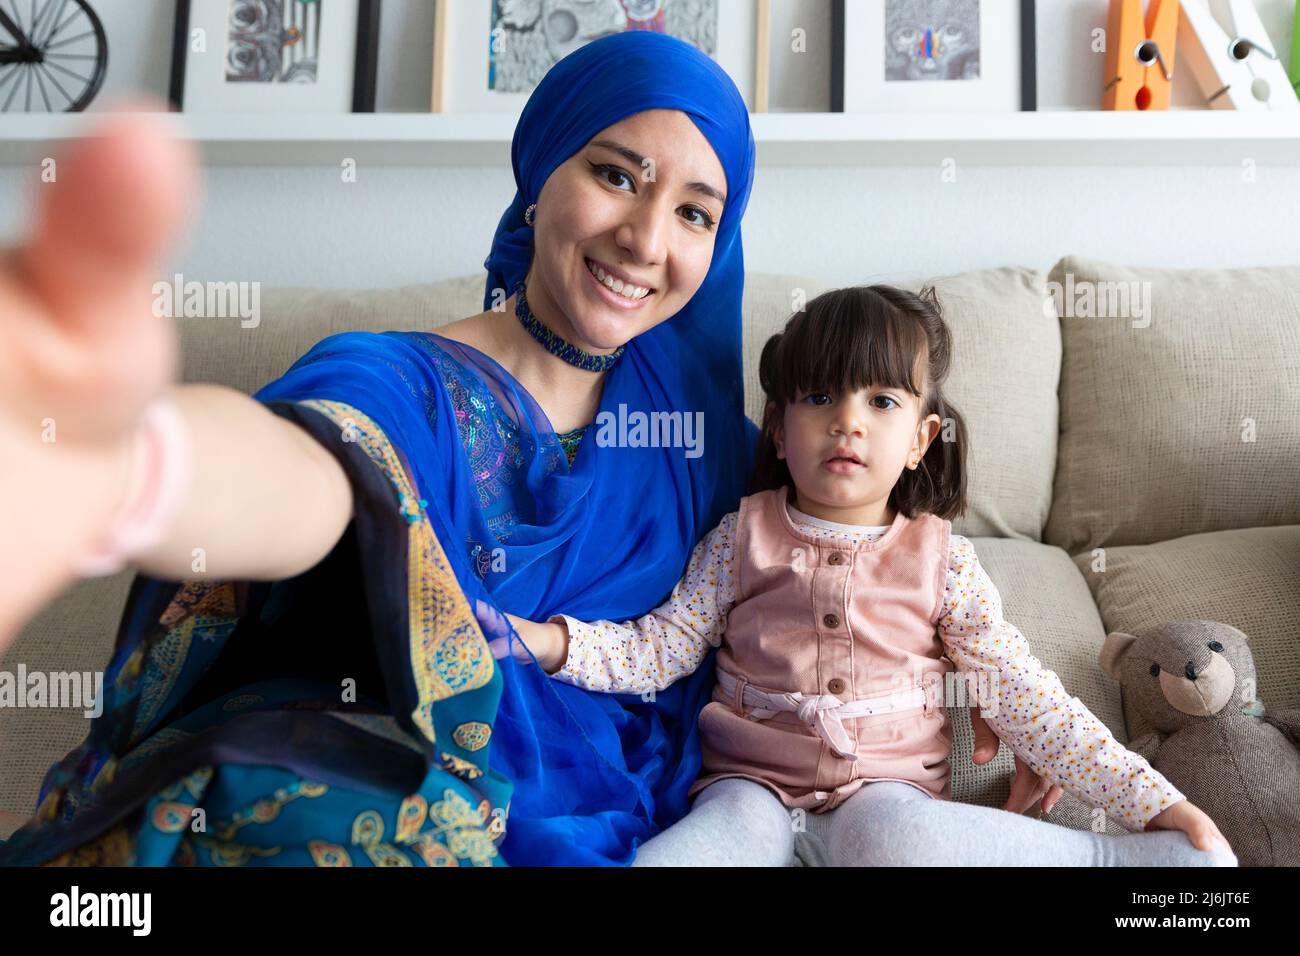 Junge muslimische Frau, die mit ihrer kleinen Tochter ein Selbstporträt anfertigen kann. Alleinerziehende Familie, die eine lustige Zeit zu Hause hat. Stockfoto